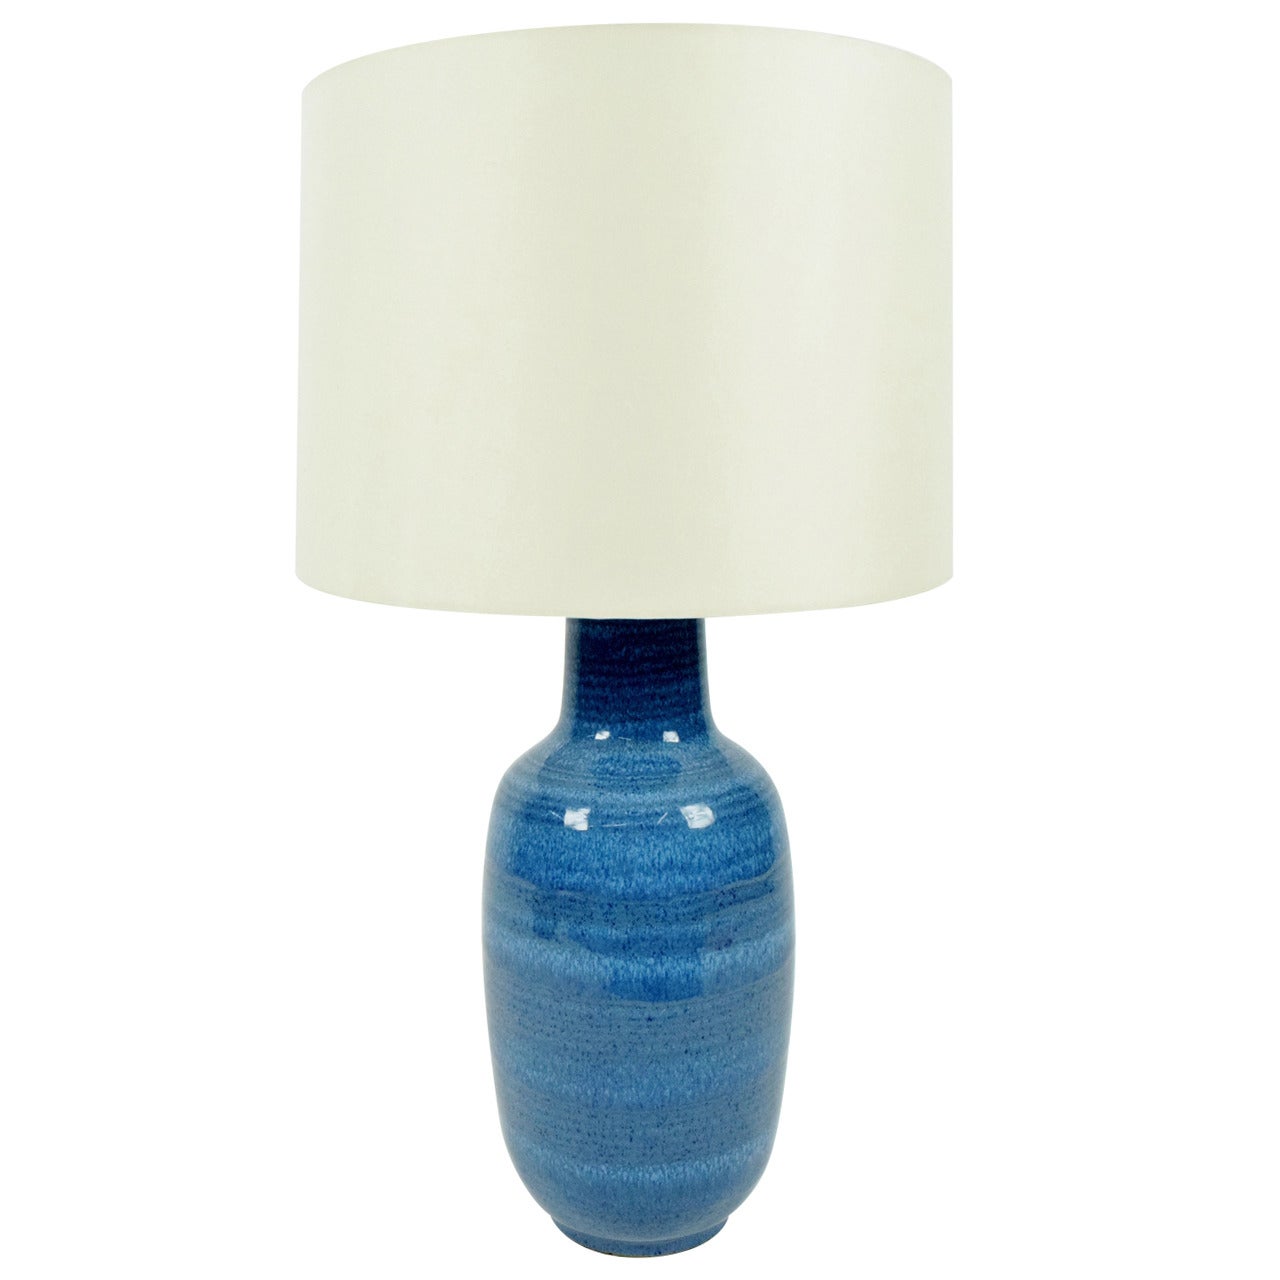 Lee Rosen for Design Technics Pottery Lamp in Vibrant Blue